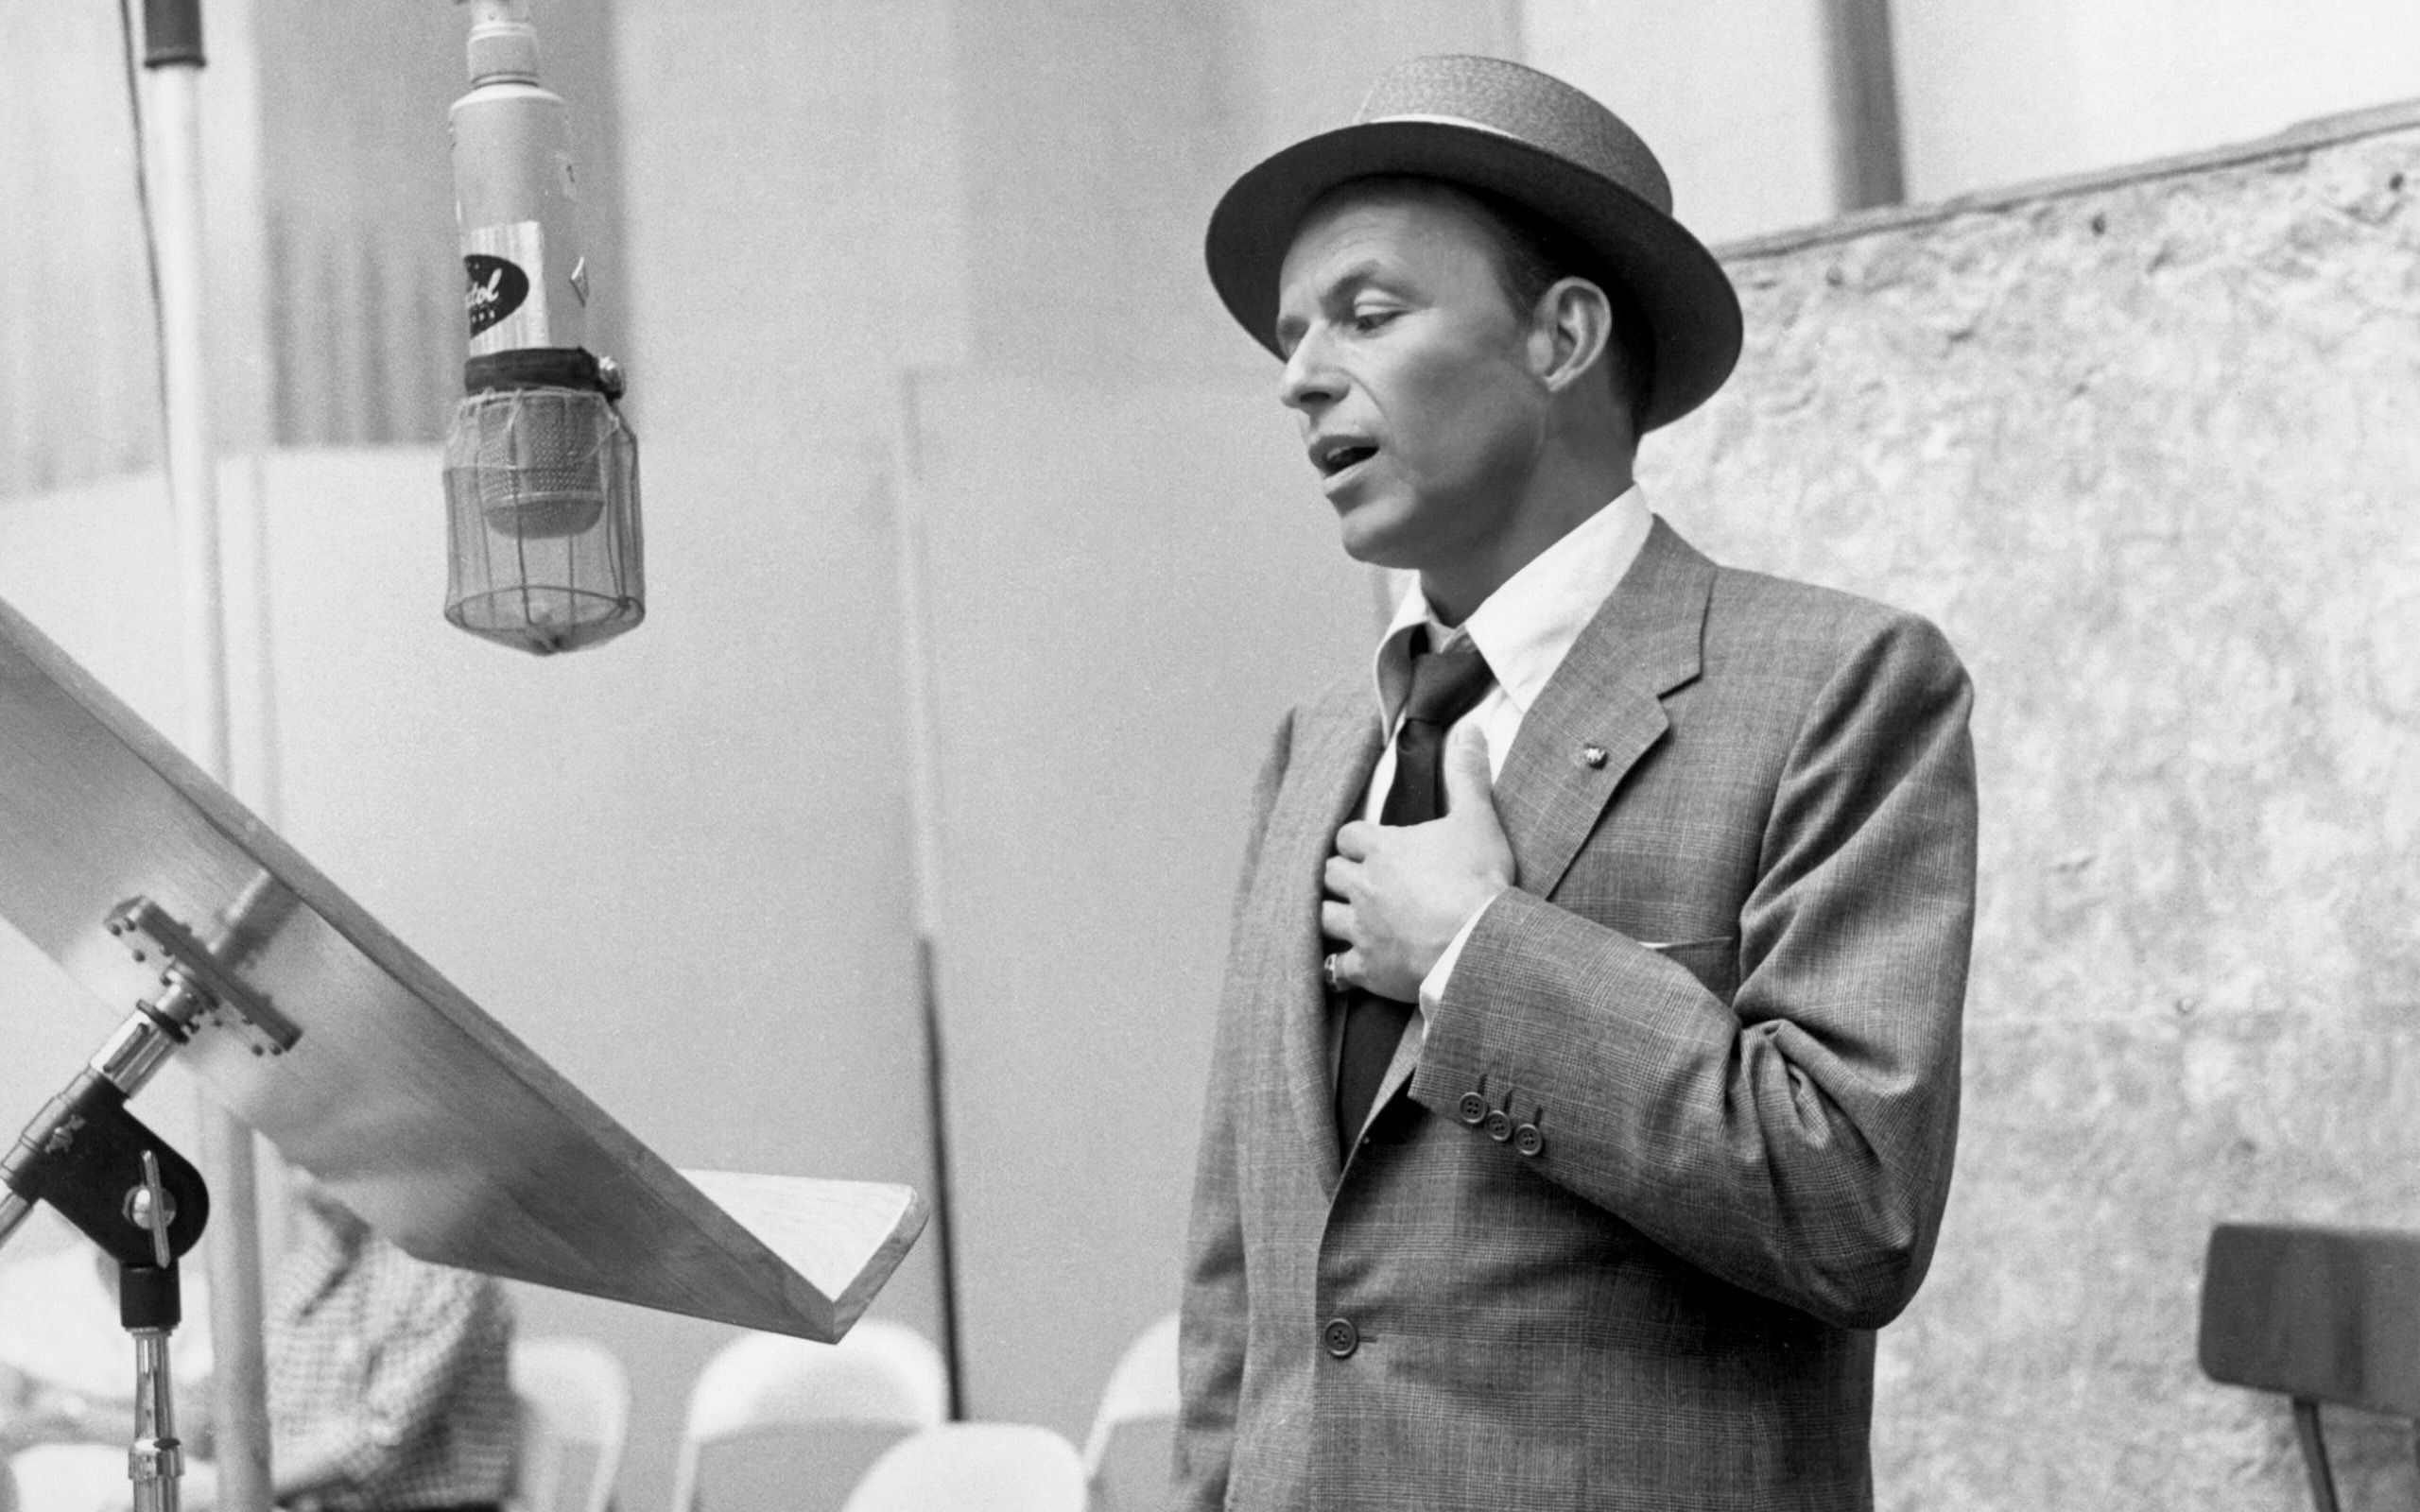 Fonds d'écran Frank Sinatra : tous les wallpapers Frank Sinatra